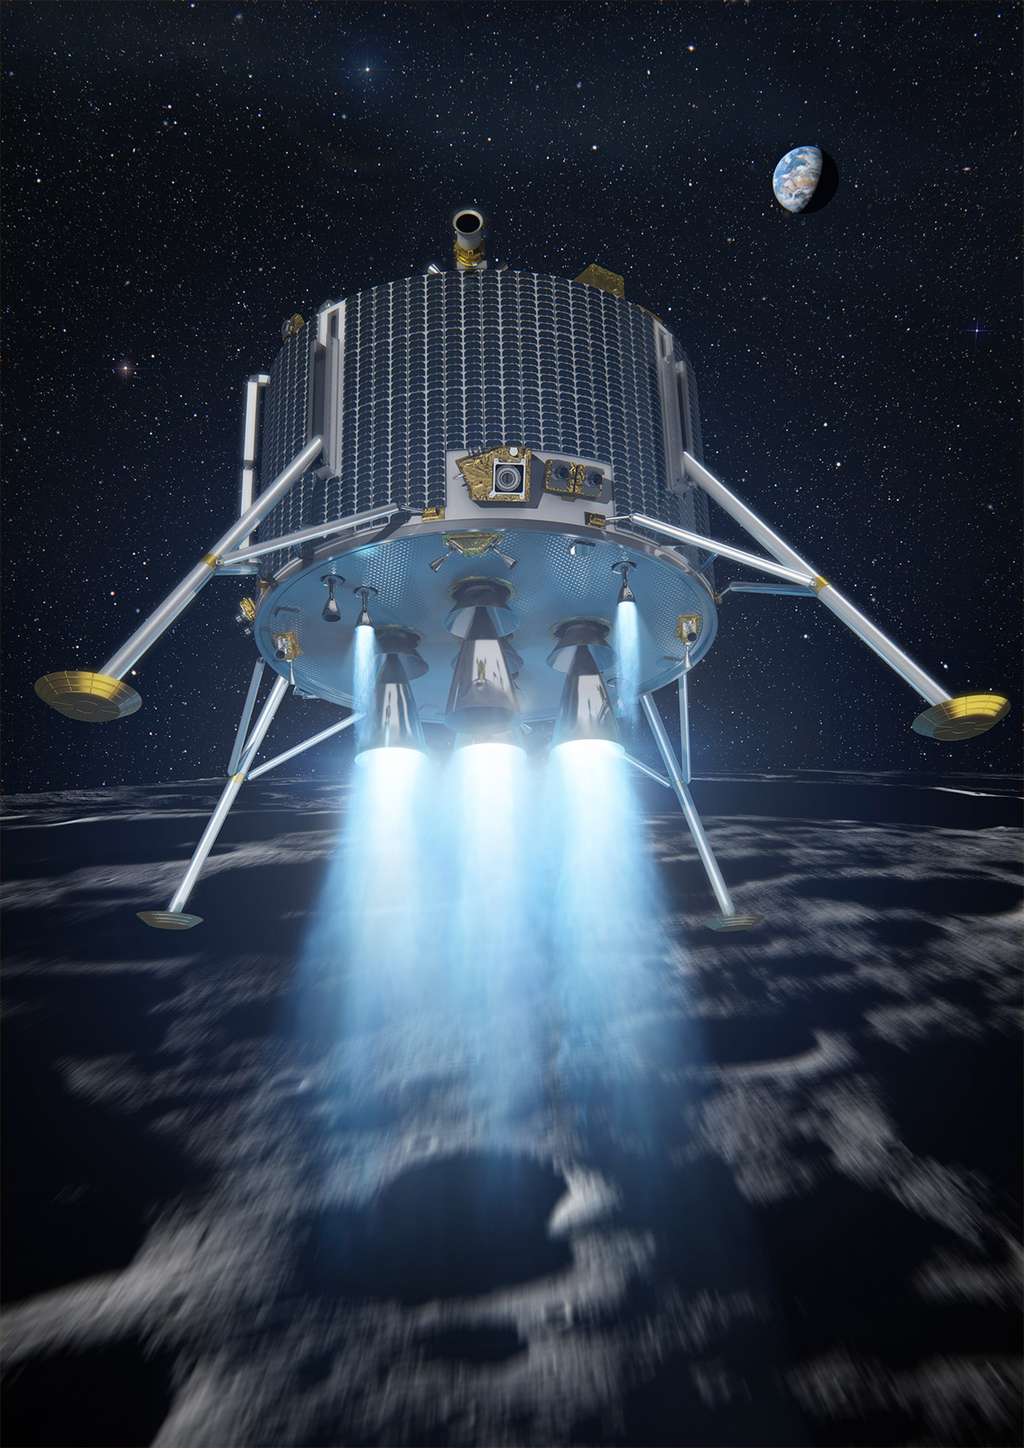 Le projet de l'Esa d'un atterrisseur lunaire a été abandonné en 2012 mais le travail réalisé n'a pas été perdu. Il a par exemple été utilisé pour ExoMars et, aujourd'hui, l'Esa l'utilise pour la mise au point du système d'alunissage Pilot. © Esa